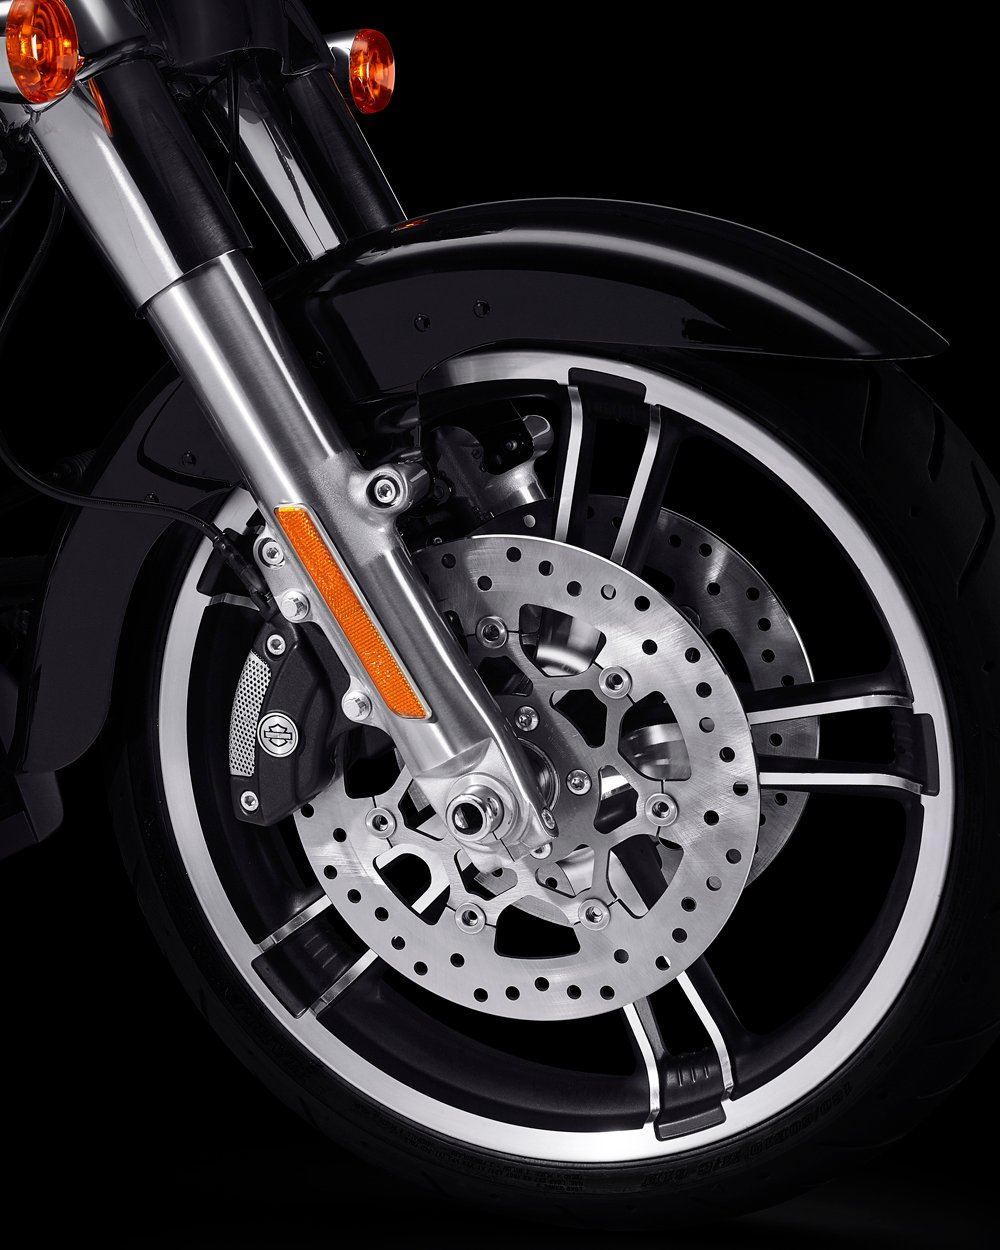 Rines de aluminio fundido Enforcer en una motocicleta Freewheeler 2022